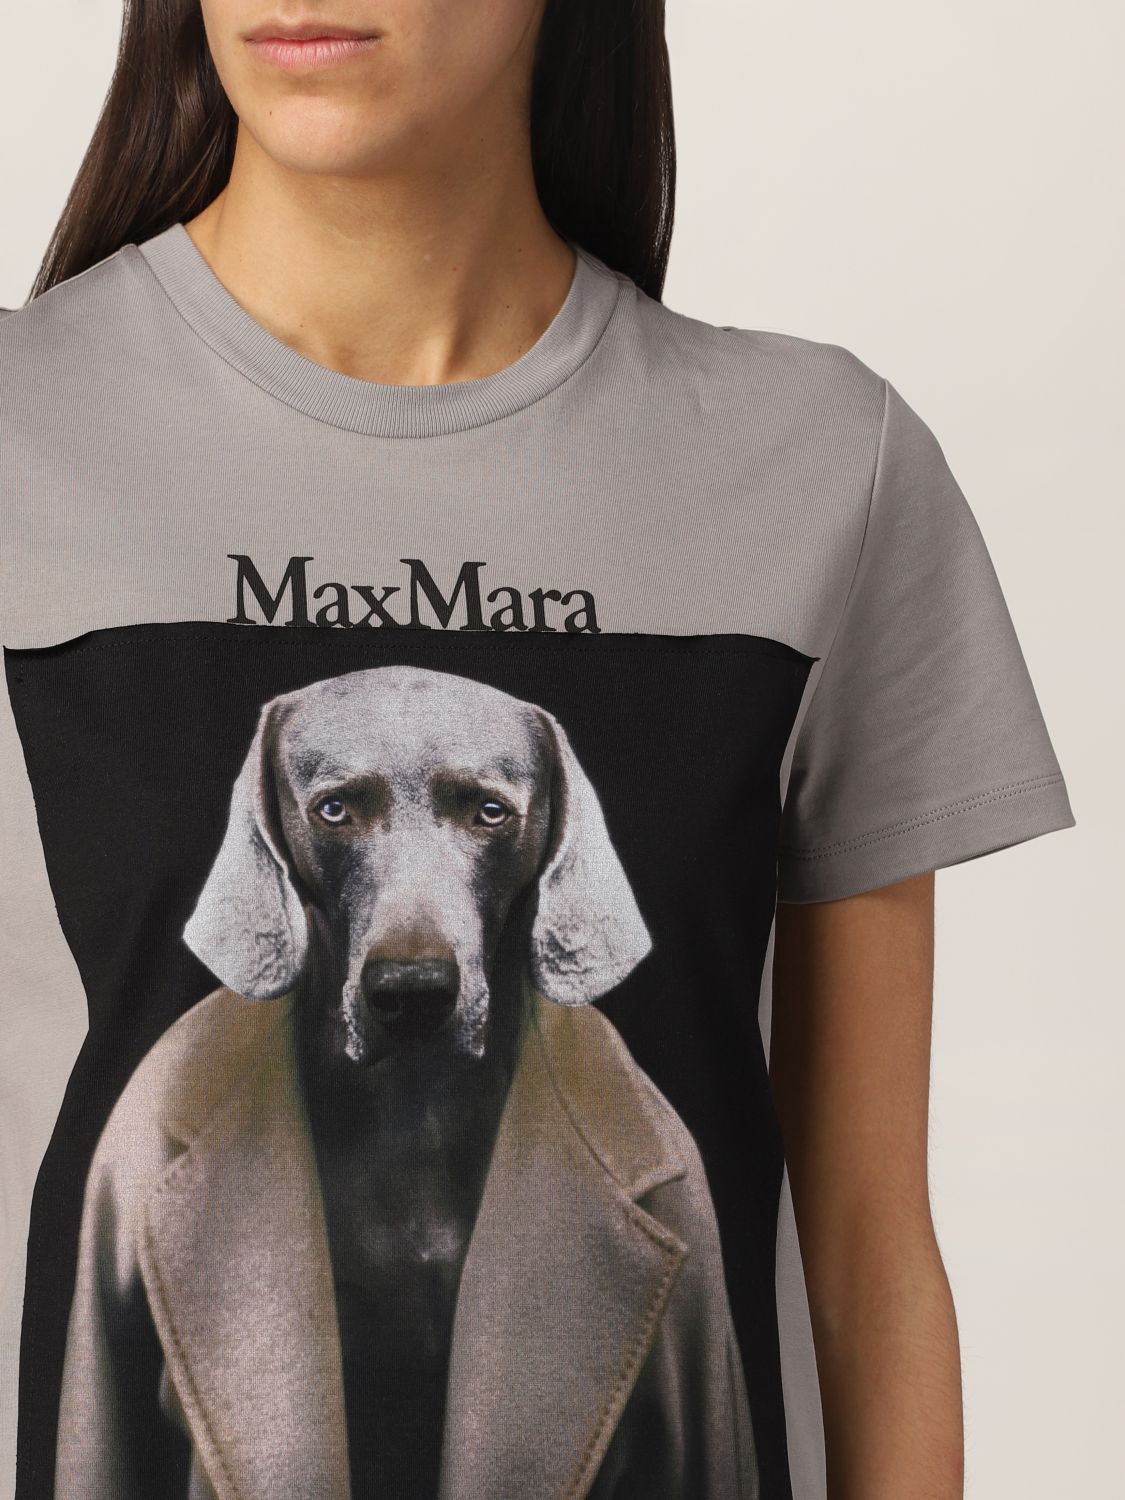 日本直営 Max Mara Dogstar コットンTシャツ Lサイズ inspektorat